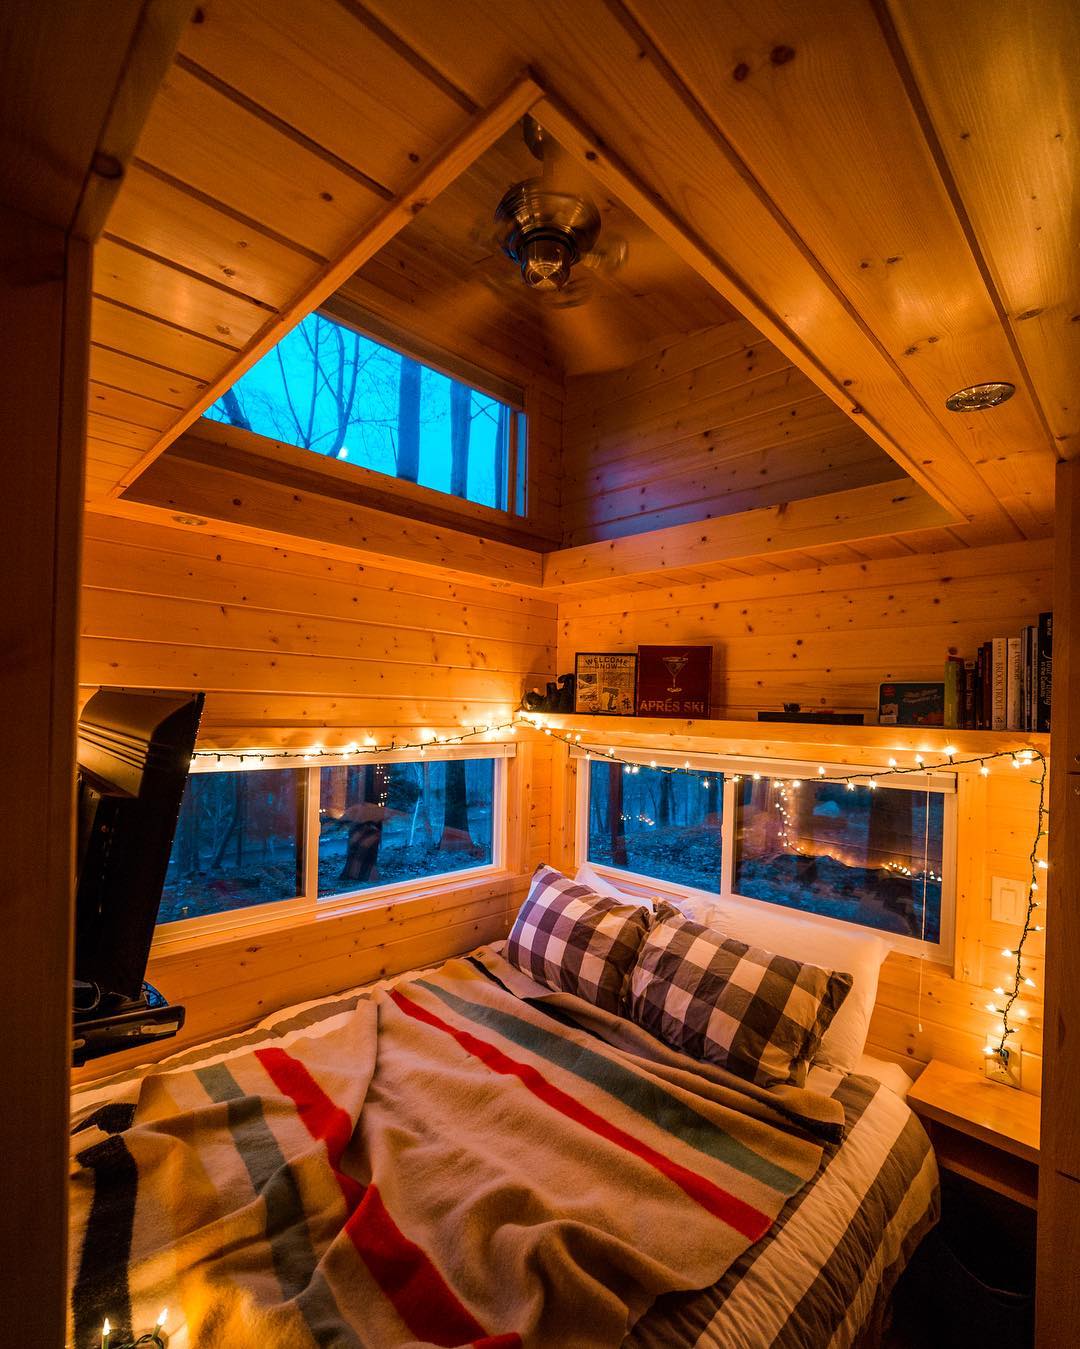 Snug cabin bedroom in the Catskills, New York.